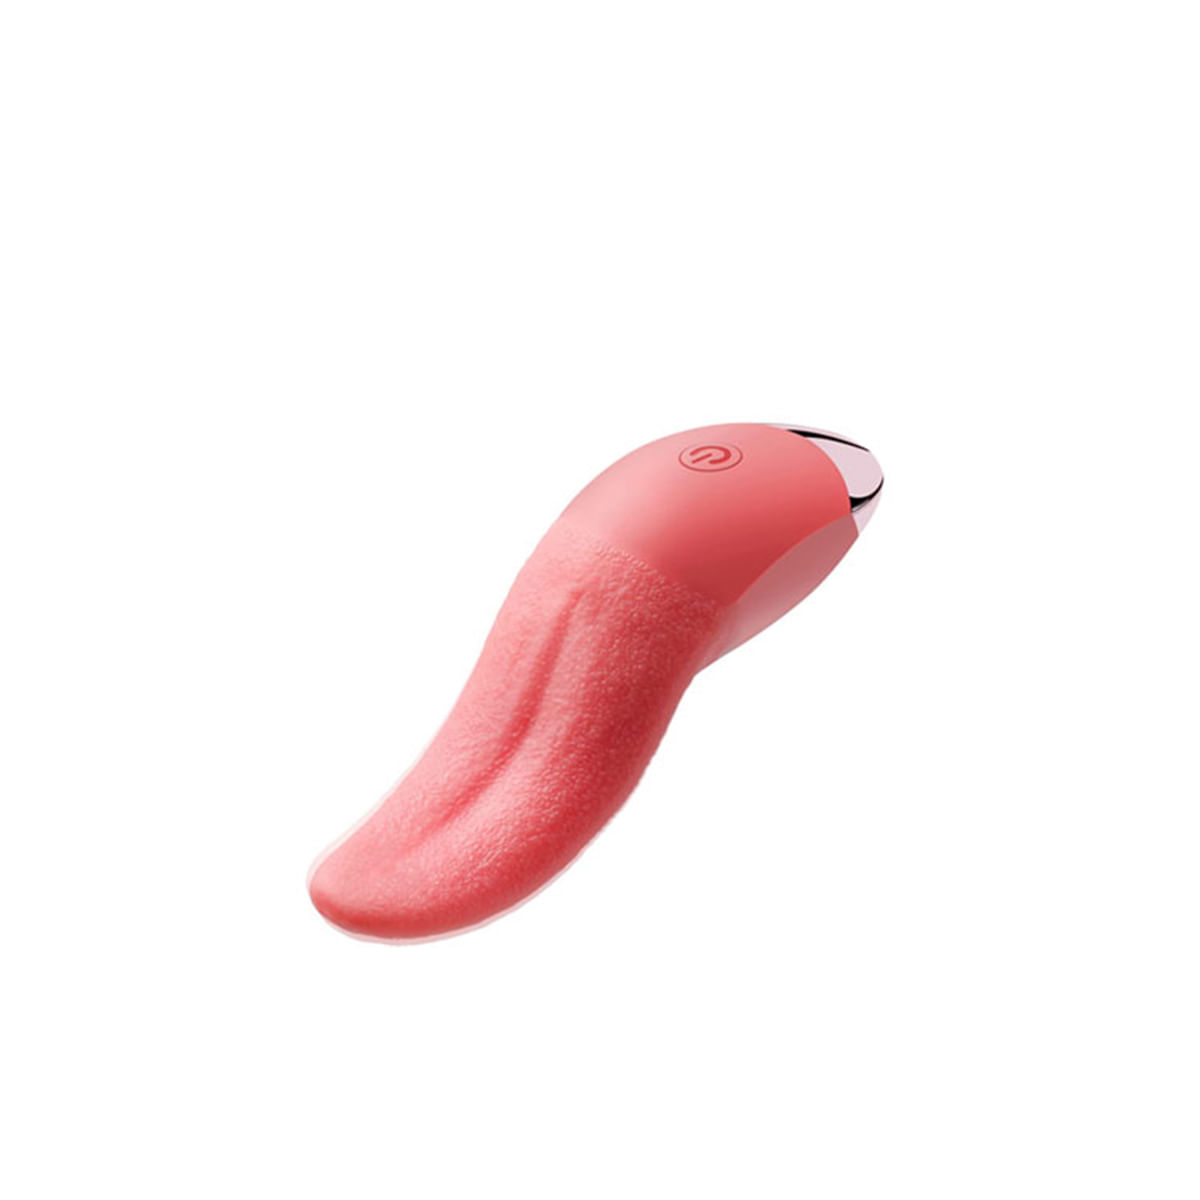 Tongue Vibrador Recarregável em Formato de Língua com 10 Modos de Vibração 3R Import